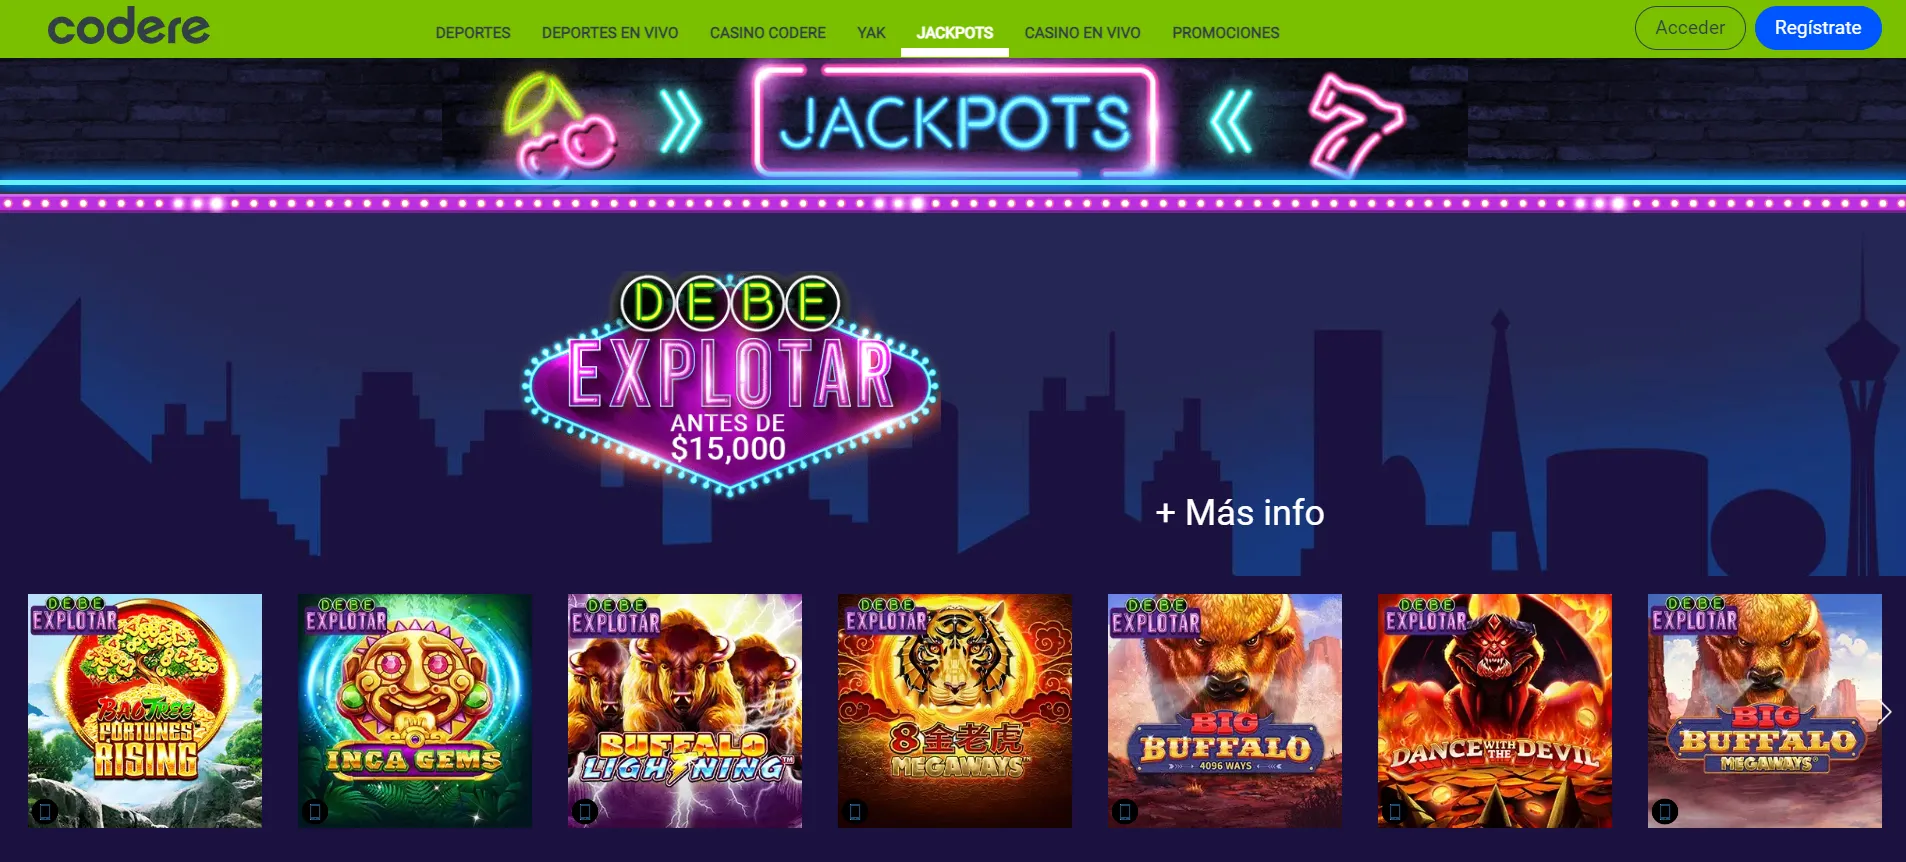 casinos gratis españa codere